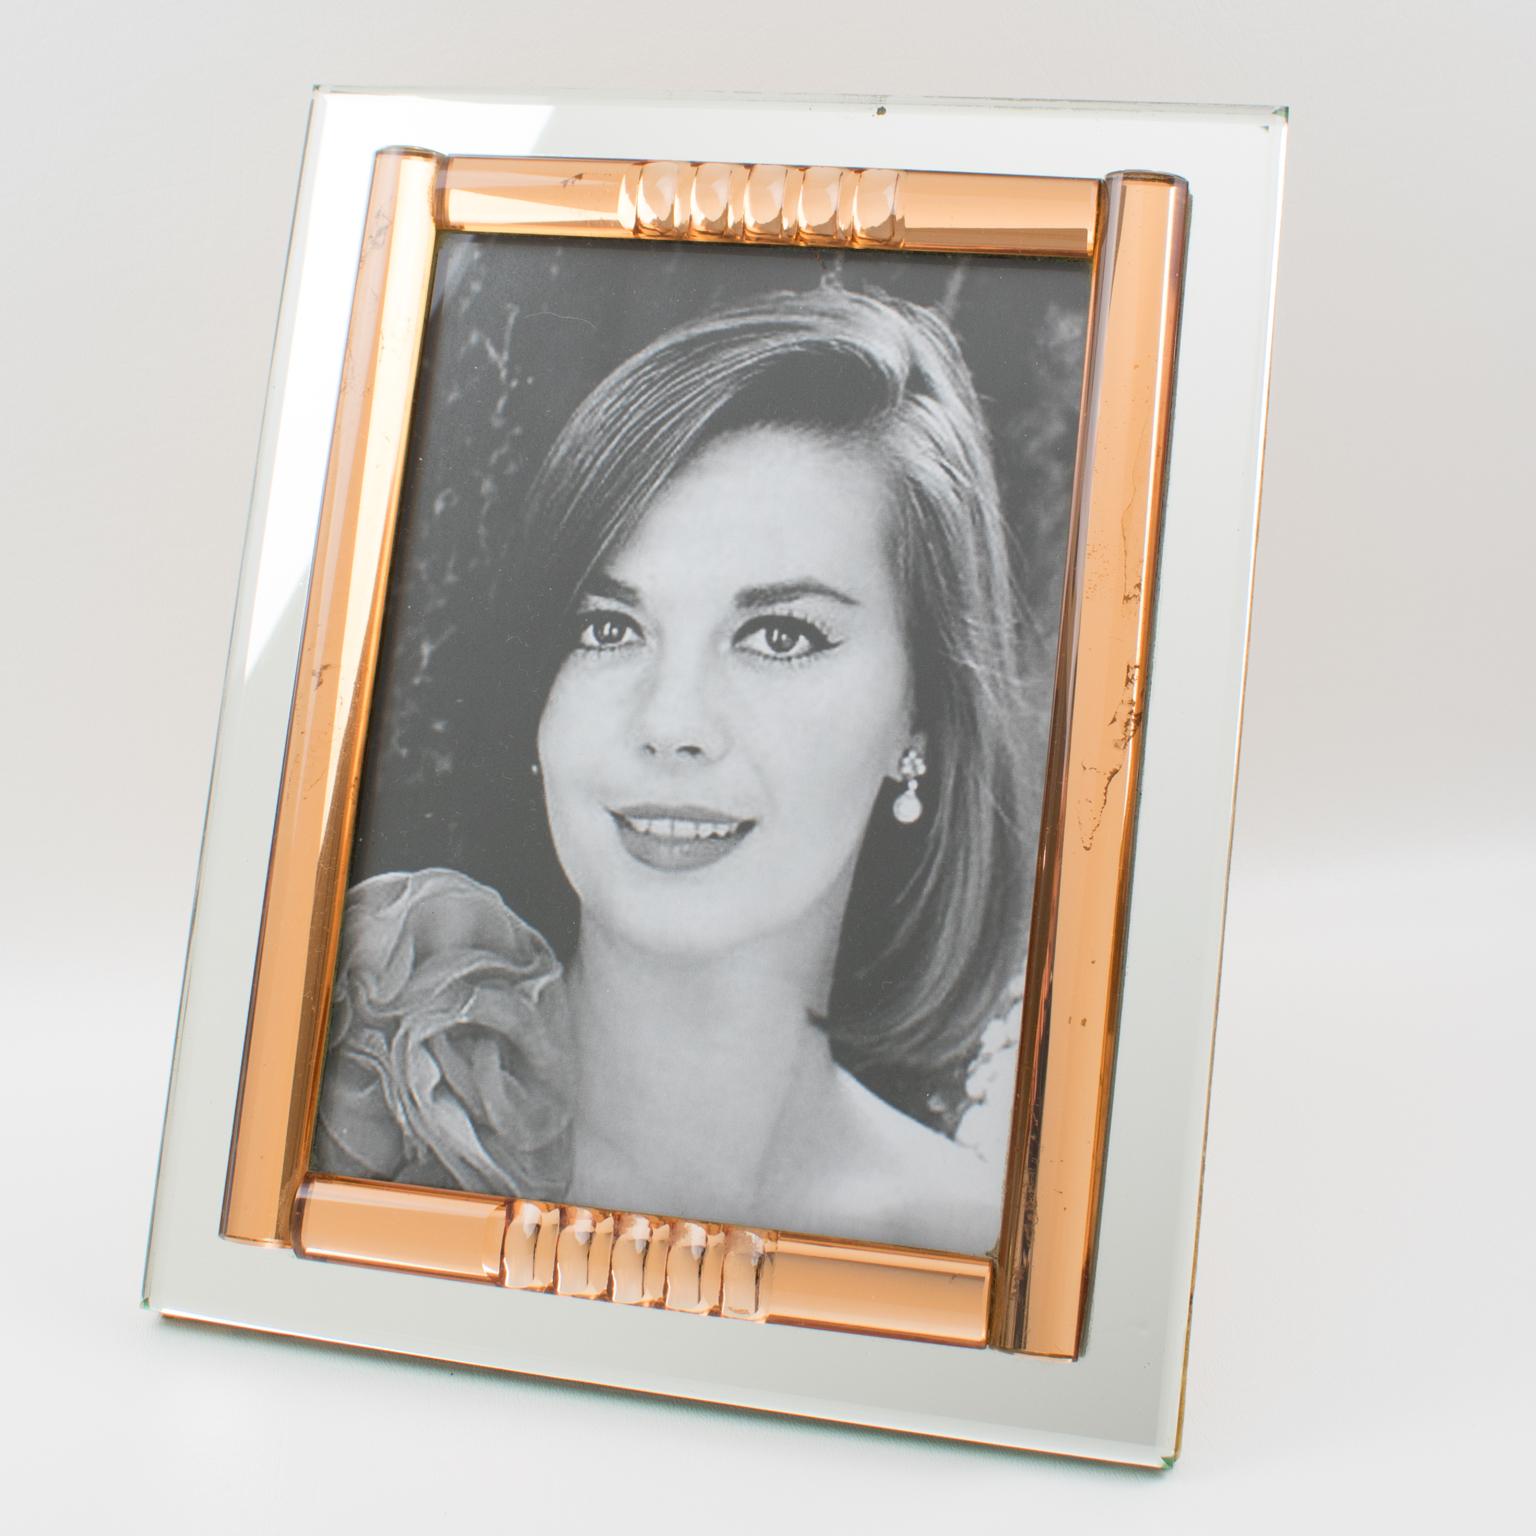 Diese atemberaubende Französisch 1940er Jahre Spiegel Bild Fotorahmen verfügt über eine tiefe geometrische Abschrägung und gewölbten Seiten in schönen Kupfer oder Pfirsich rosa Farbe mit silbernen Spiegelglas komplimentiert. Der Rahmen kann sowohl